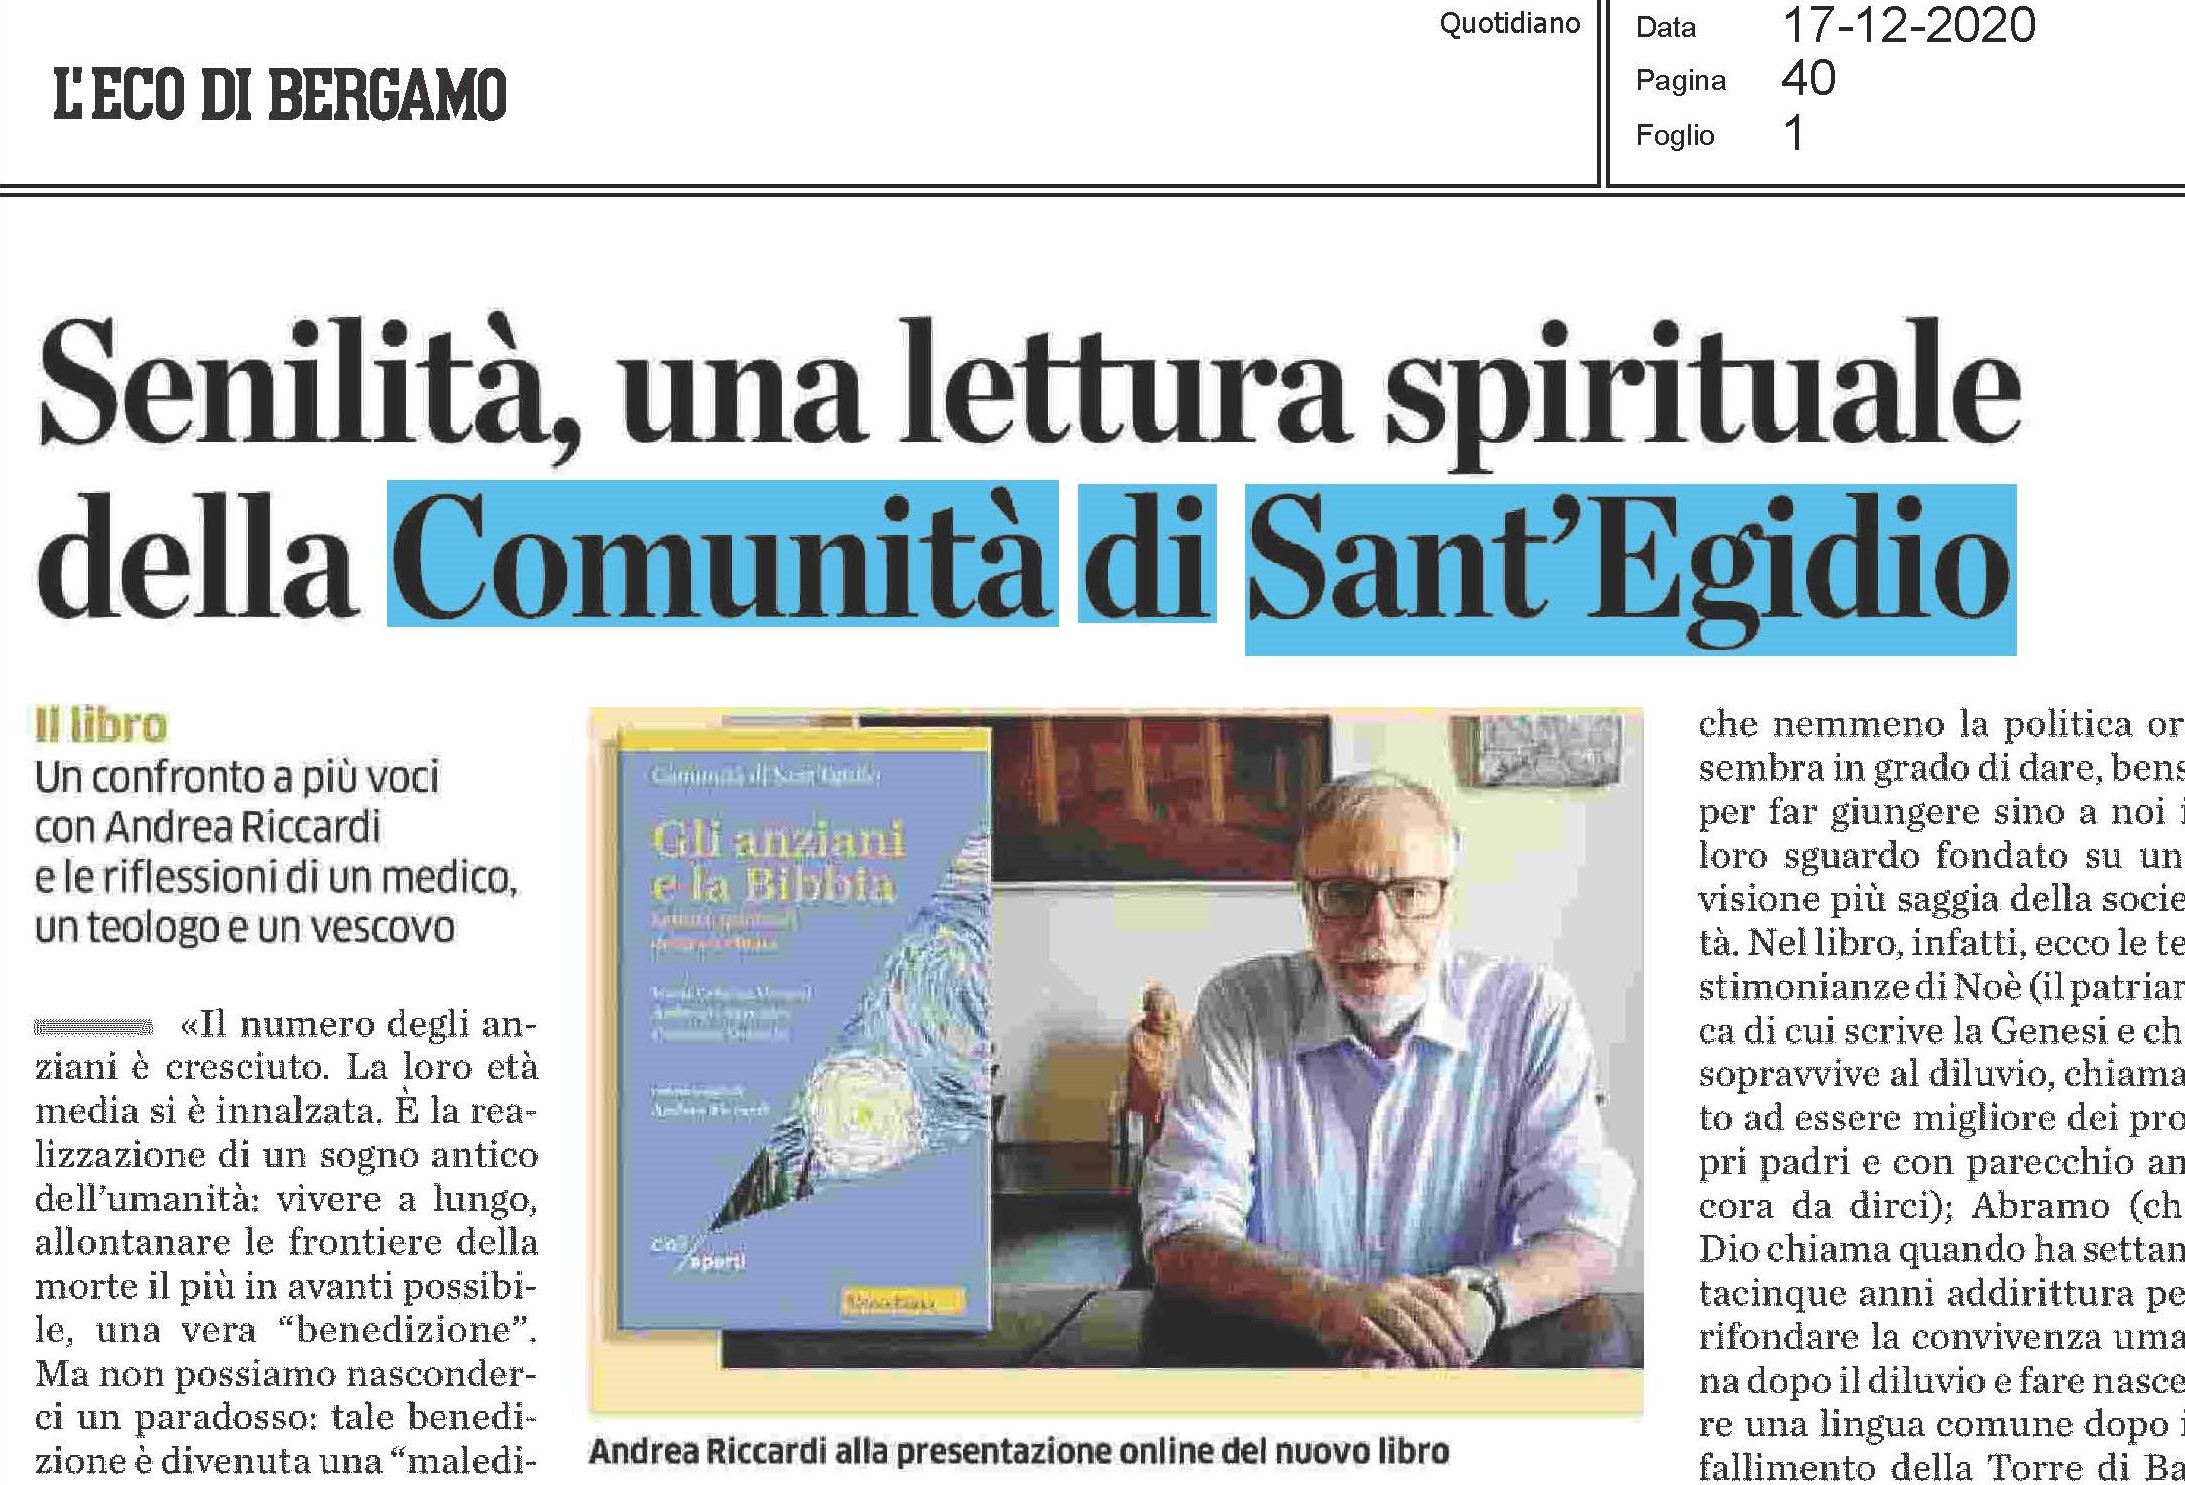 Senilità, una lettura spirituale della Comunità di Sant'Egidio